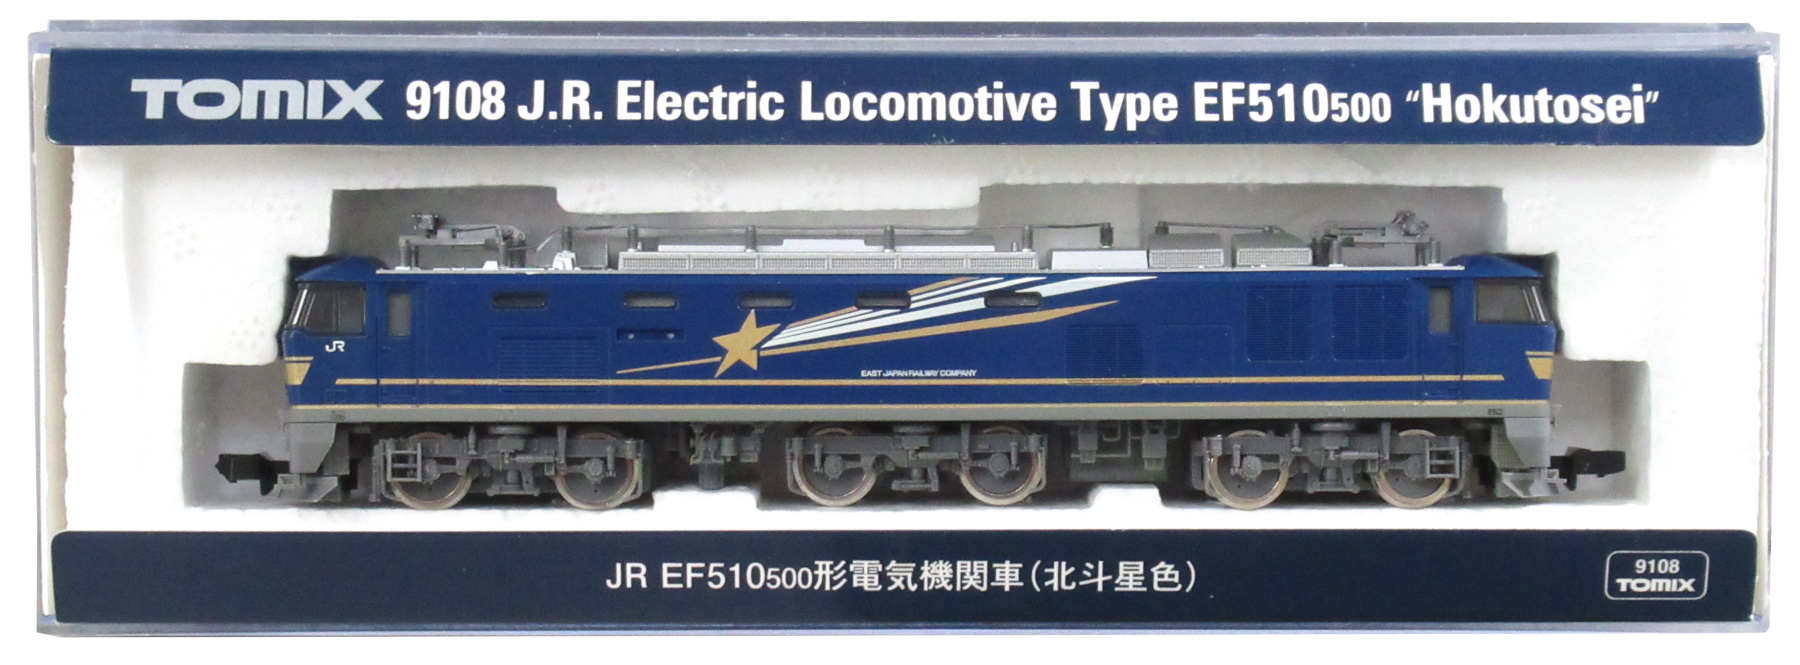 公式]鉄道模型(9108JR EF510-500形電気機関車 (北斗星色))商品詳細 